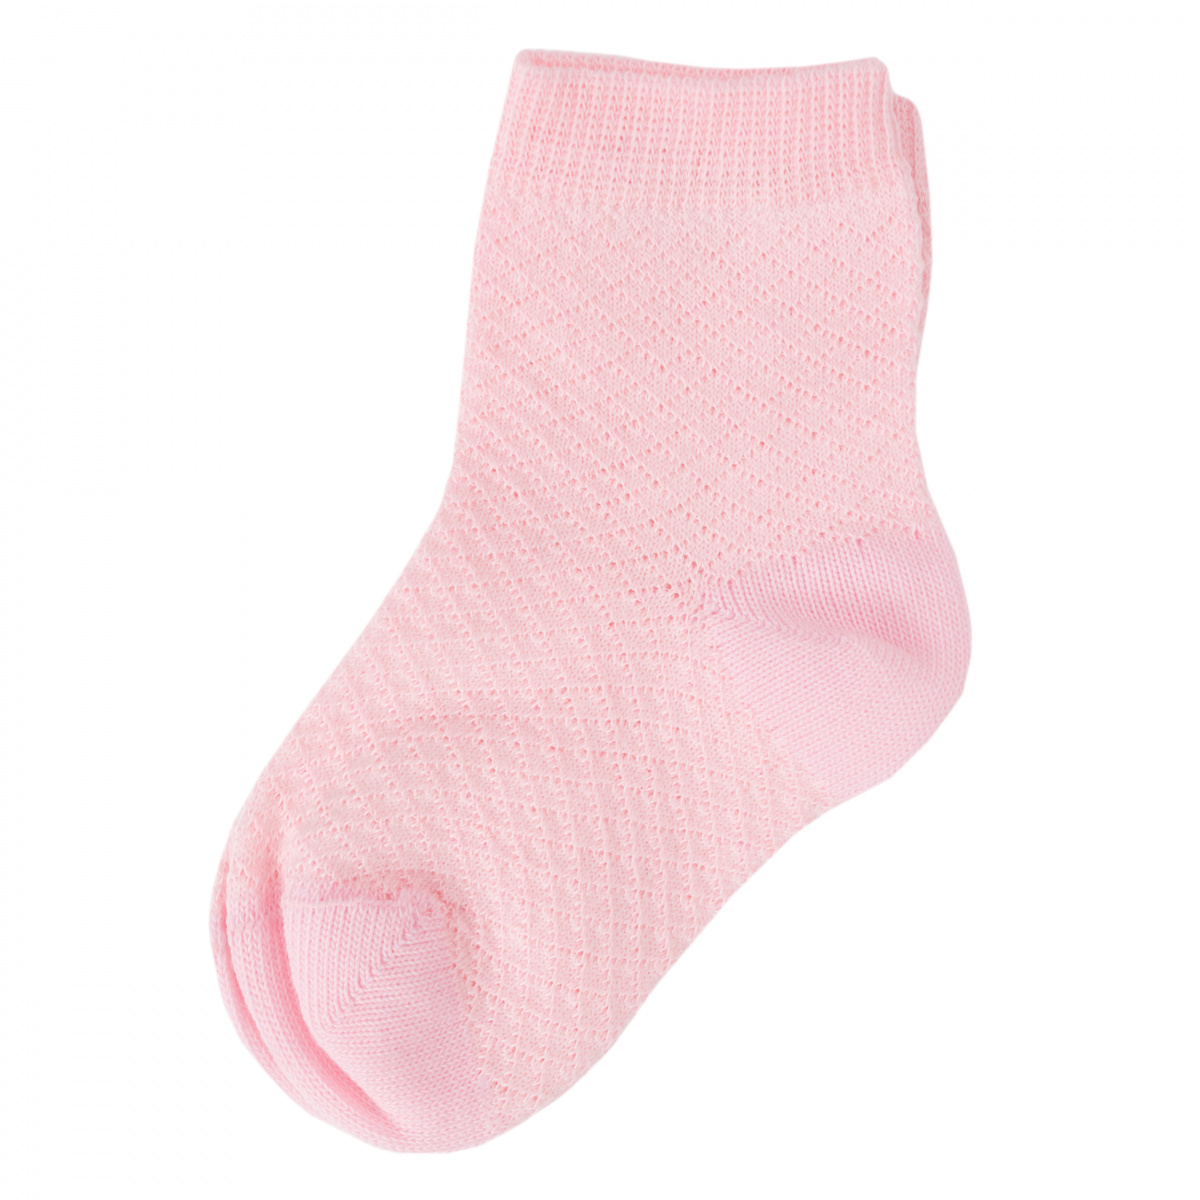 Розово белые носки. Носки PLAYTODAY комплект из 2 пар. Бело розовые носки. Розовые носки на белом фоне. Комплект детских носочков розовые и белые.